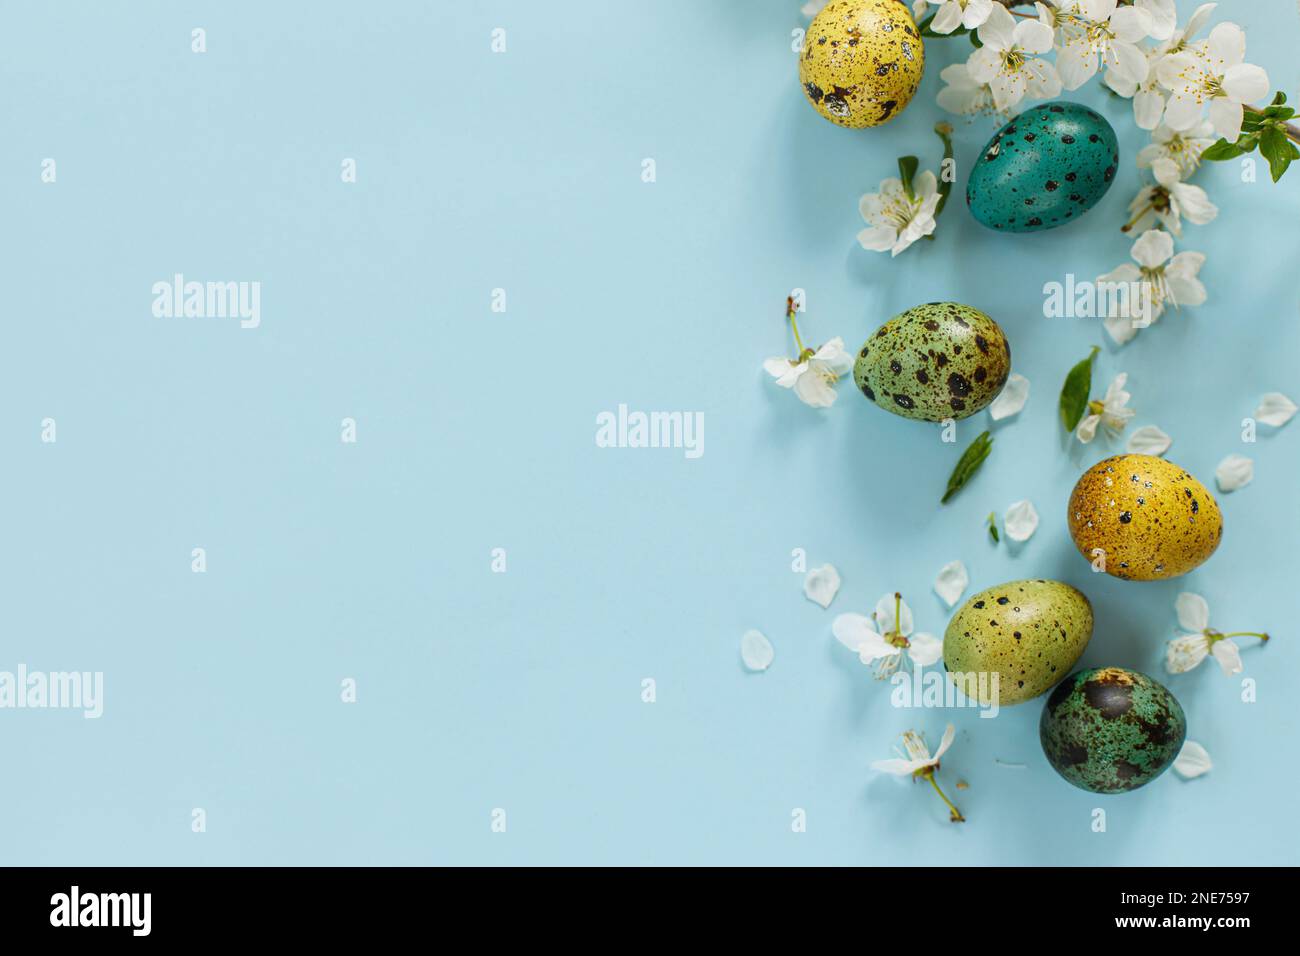 Buona Pasqua! Pasqua uova alla moda e fiori primaverili fioriti su sfondo blu, spazio per il testo. Biglietto d'auguri o banner moderno. Colo dipinto naturale Foto Stock